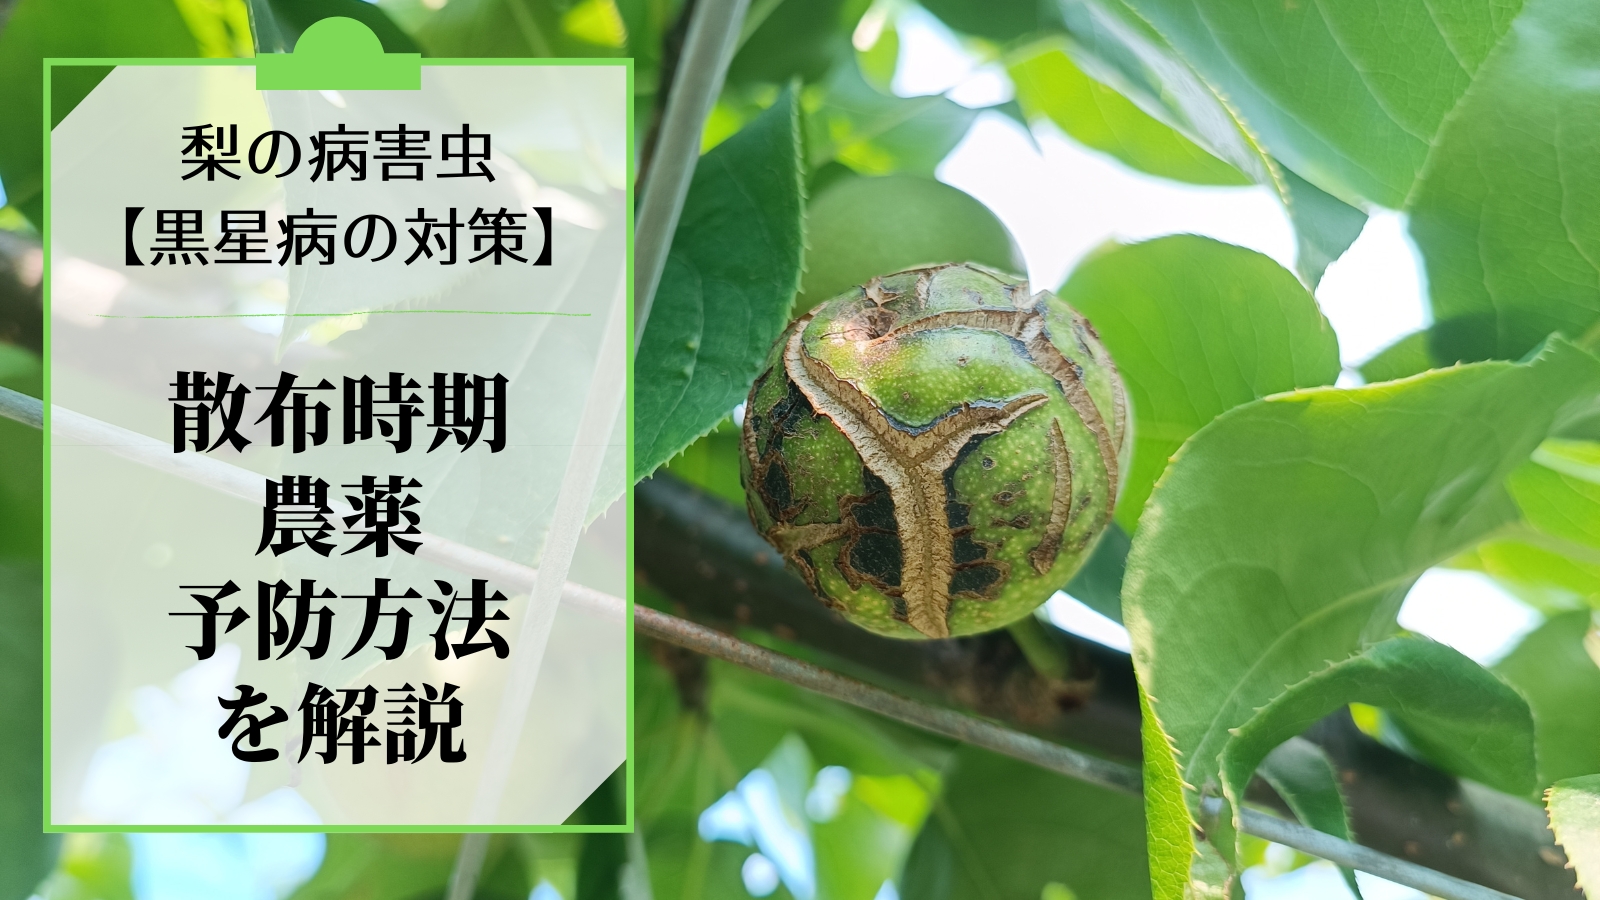 梨の黒星病の対策｜鱗片脱落期からの防除･農薬を解説 93